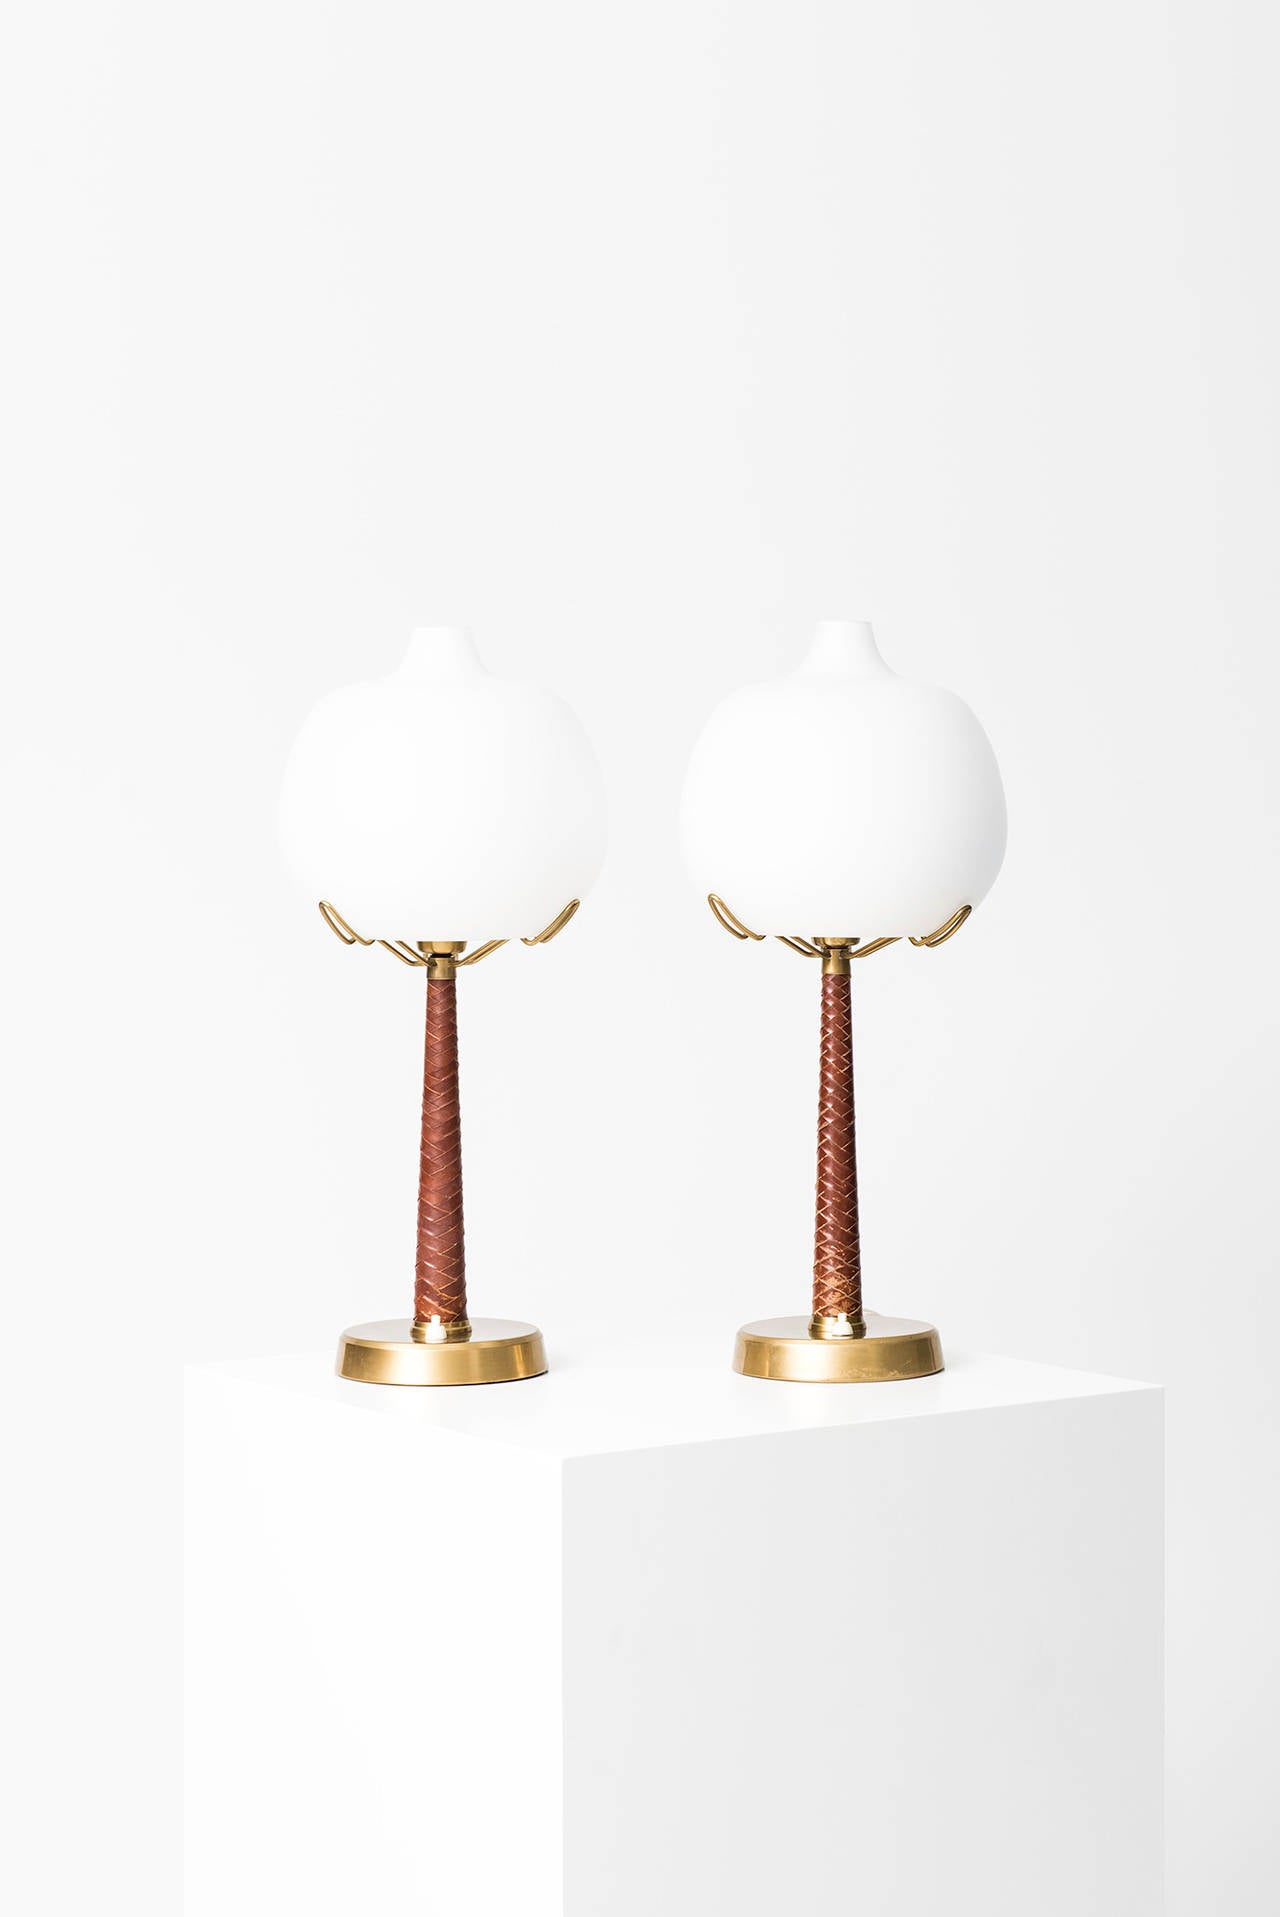 Hans Bergström table lamps model 700 by Ateljé Lyktan in Sweden 2